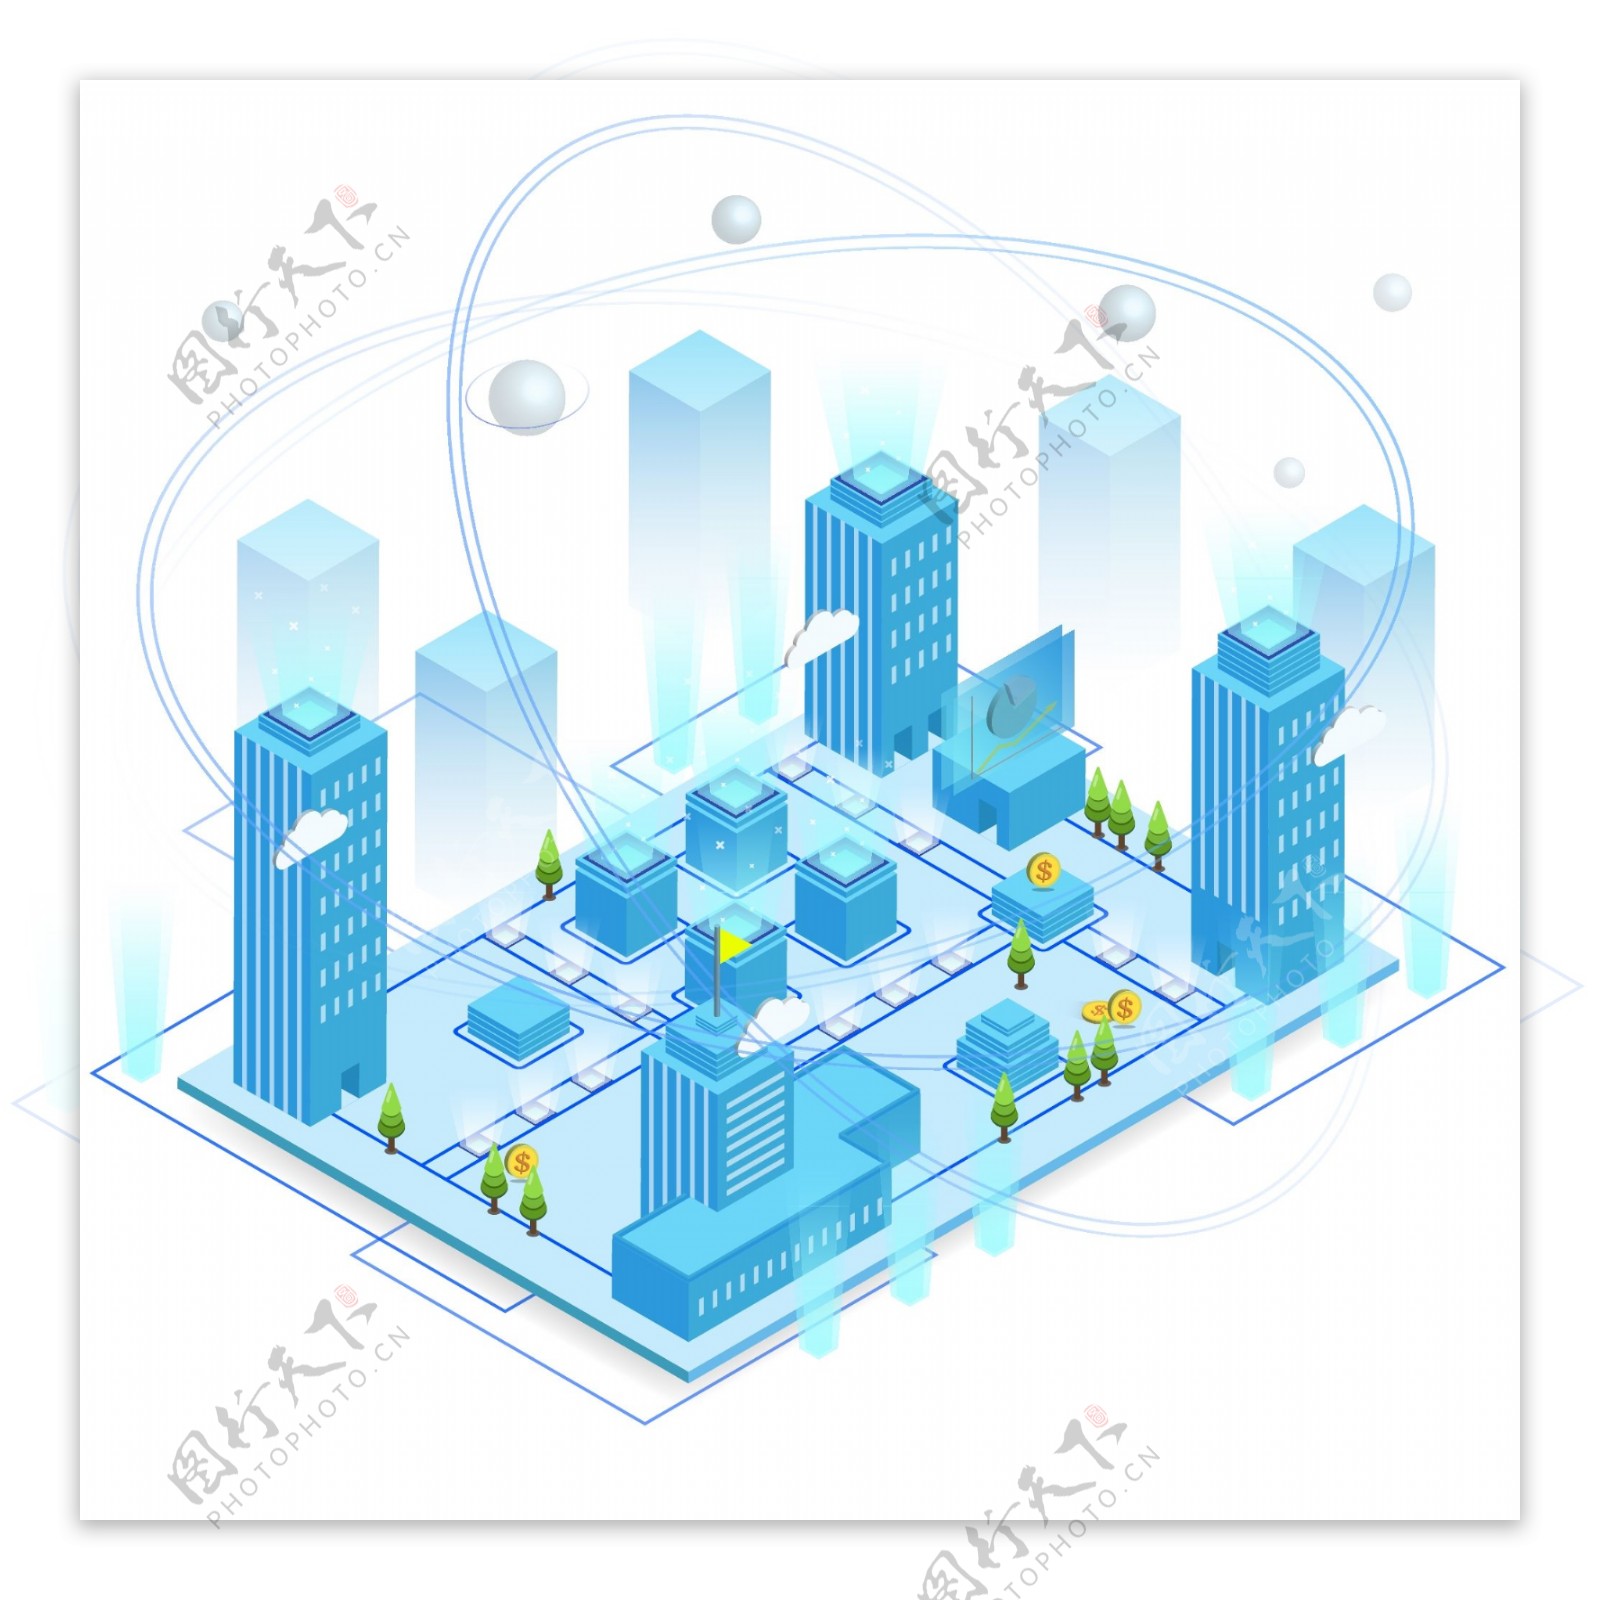 2.5D科技互联网城市建筑未来智慧信息化